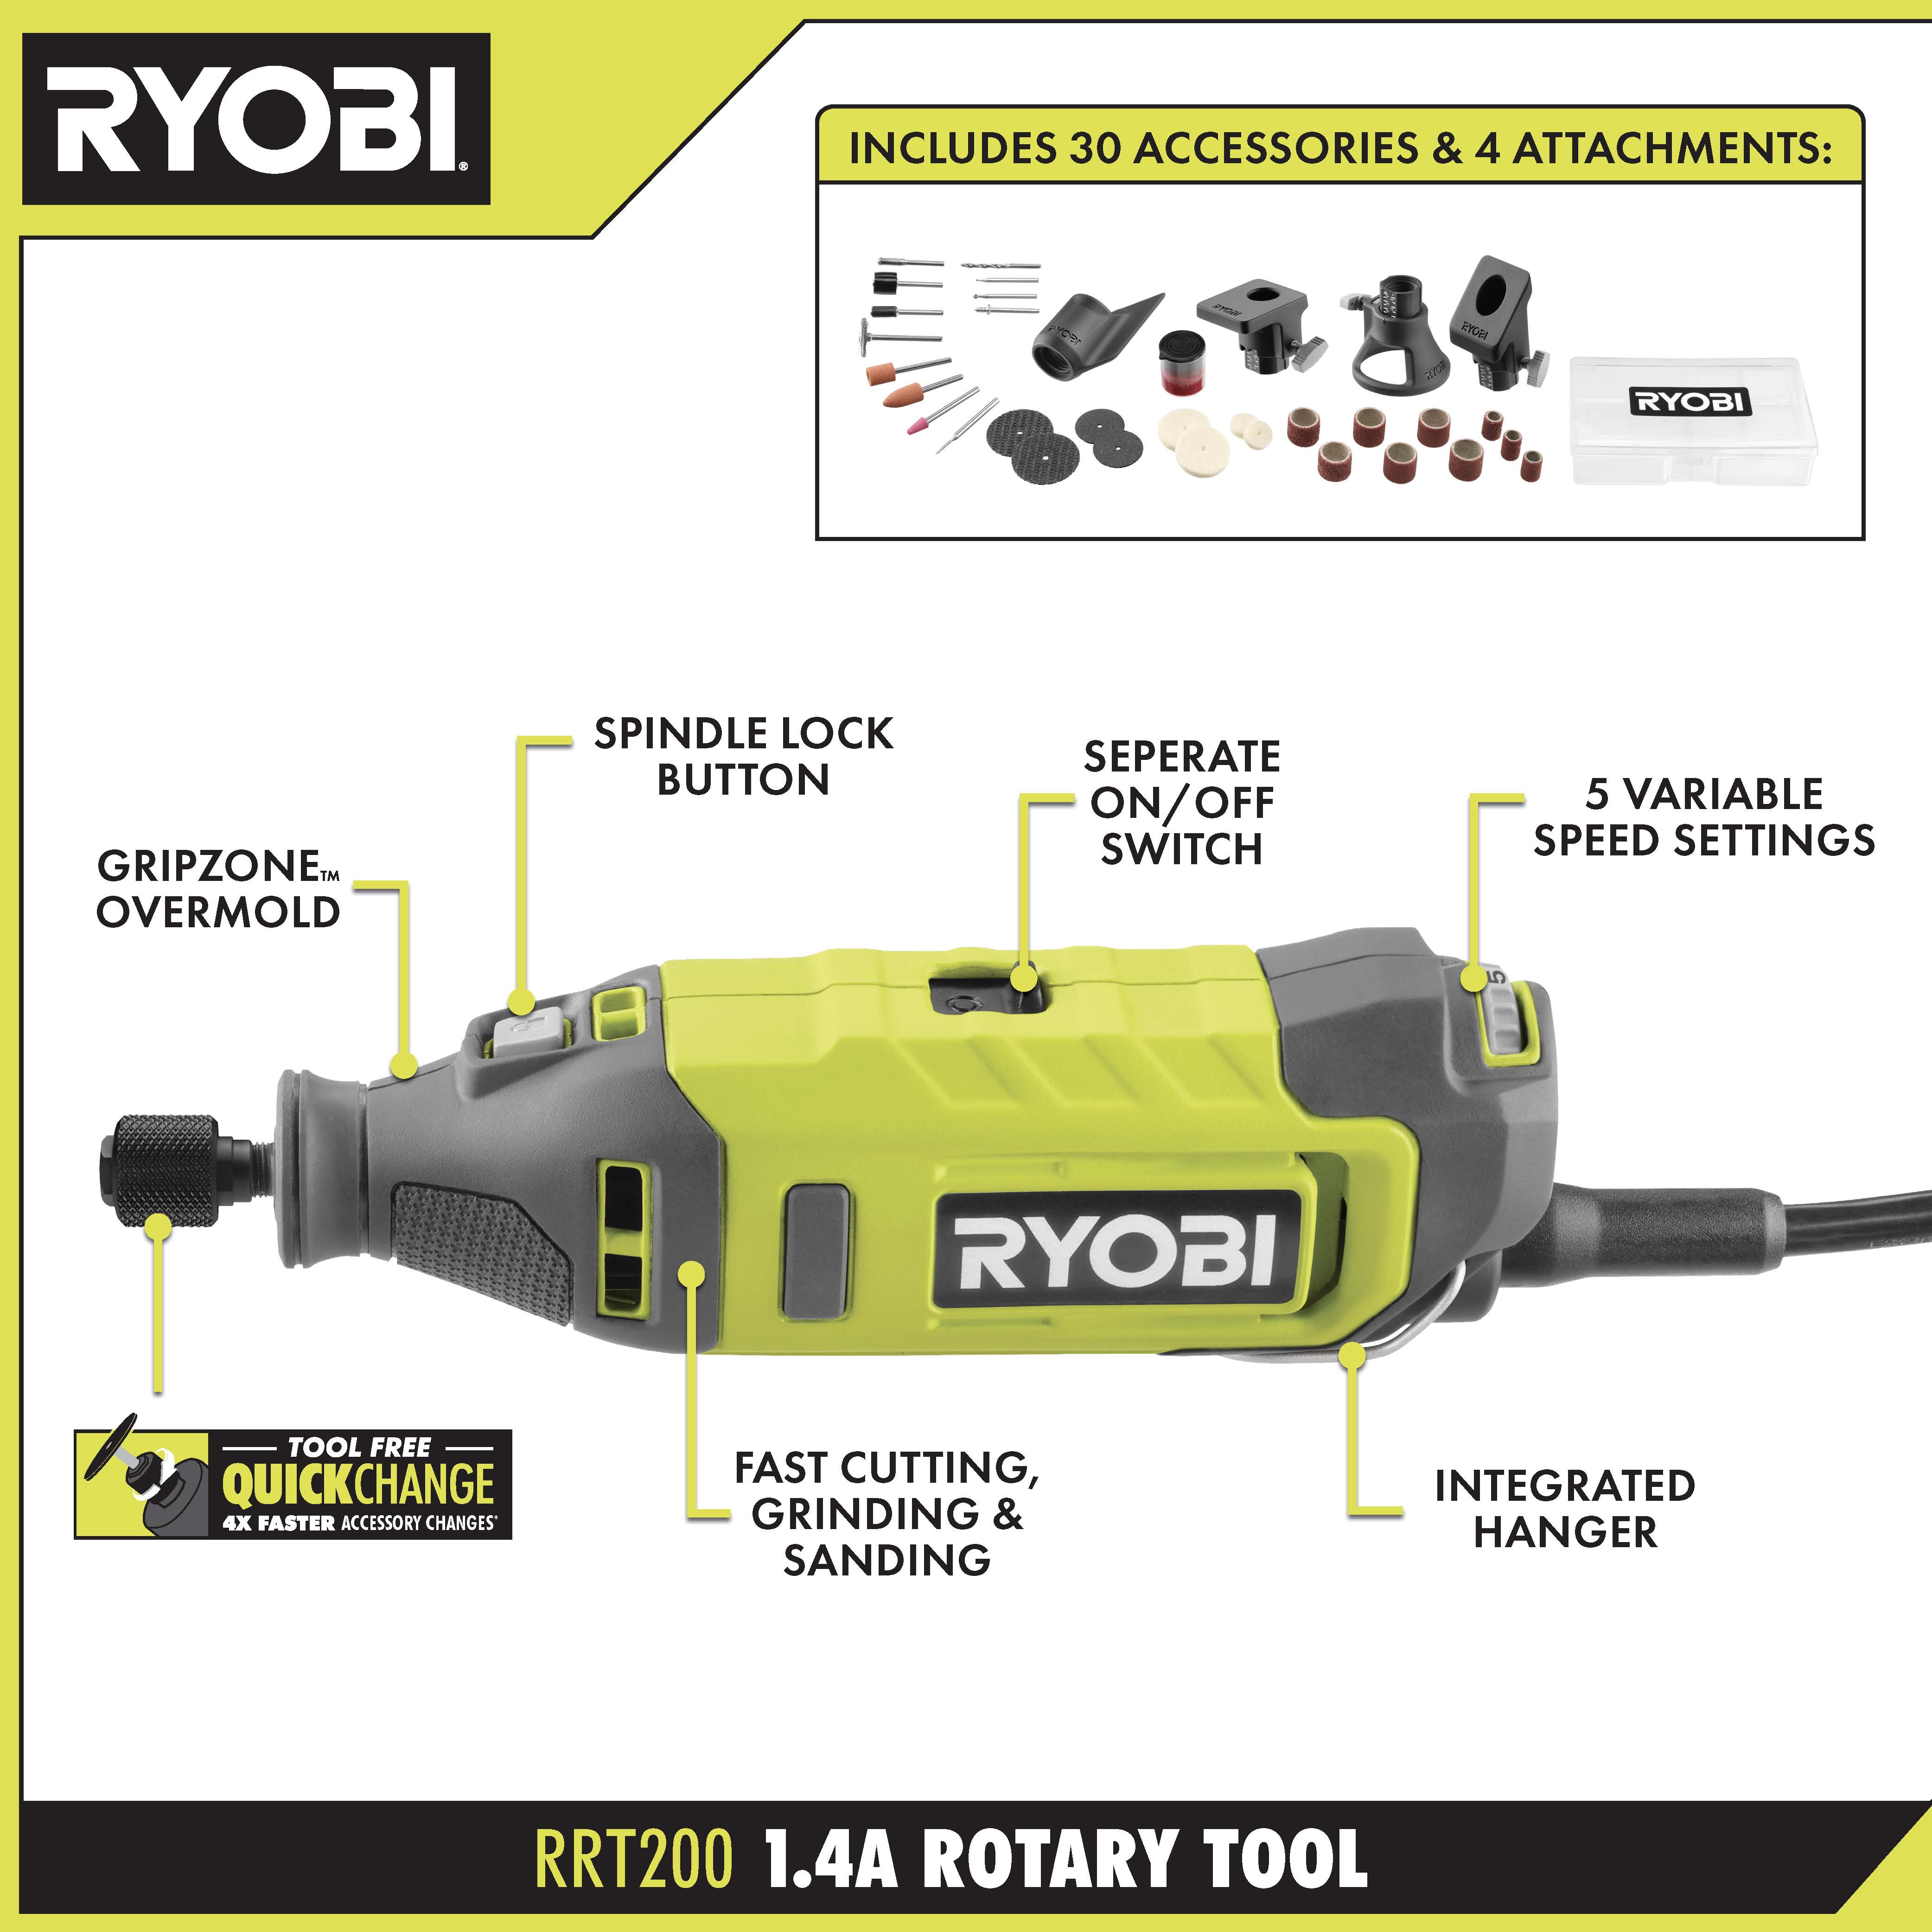 1.4 Amp Rotary Tool - RYOBI Tools